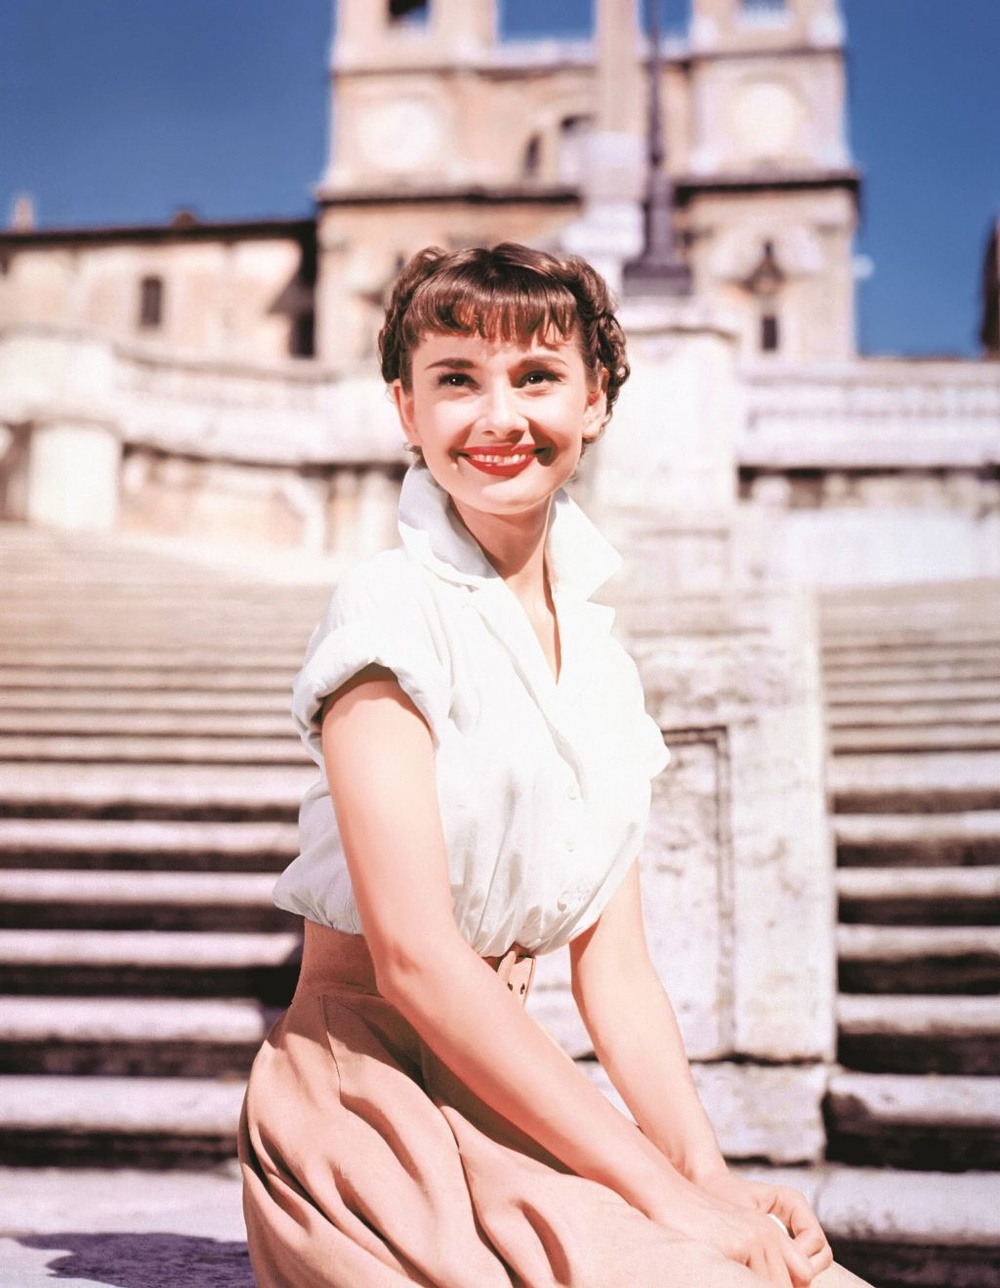  
Sự nghiệp của Hepburn cực kỳ thăng hoa khi bước chân sang Mỹ. (Nguồn ảnh: Pinterest)